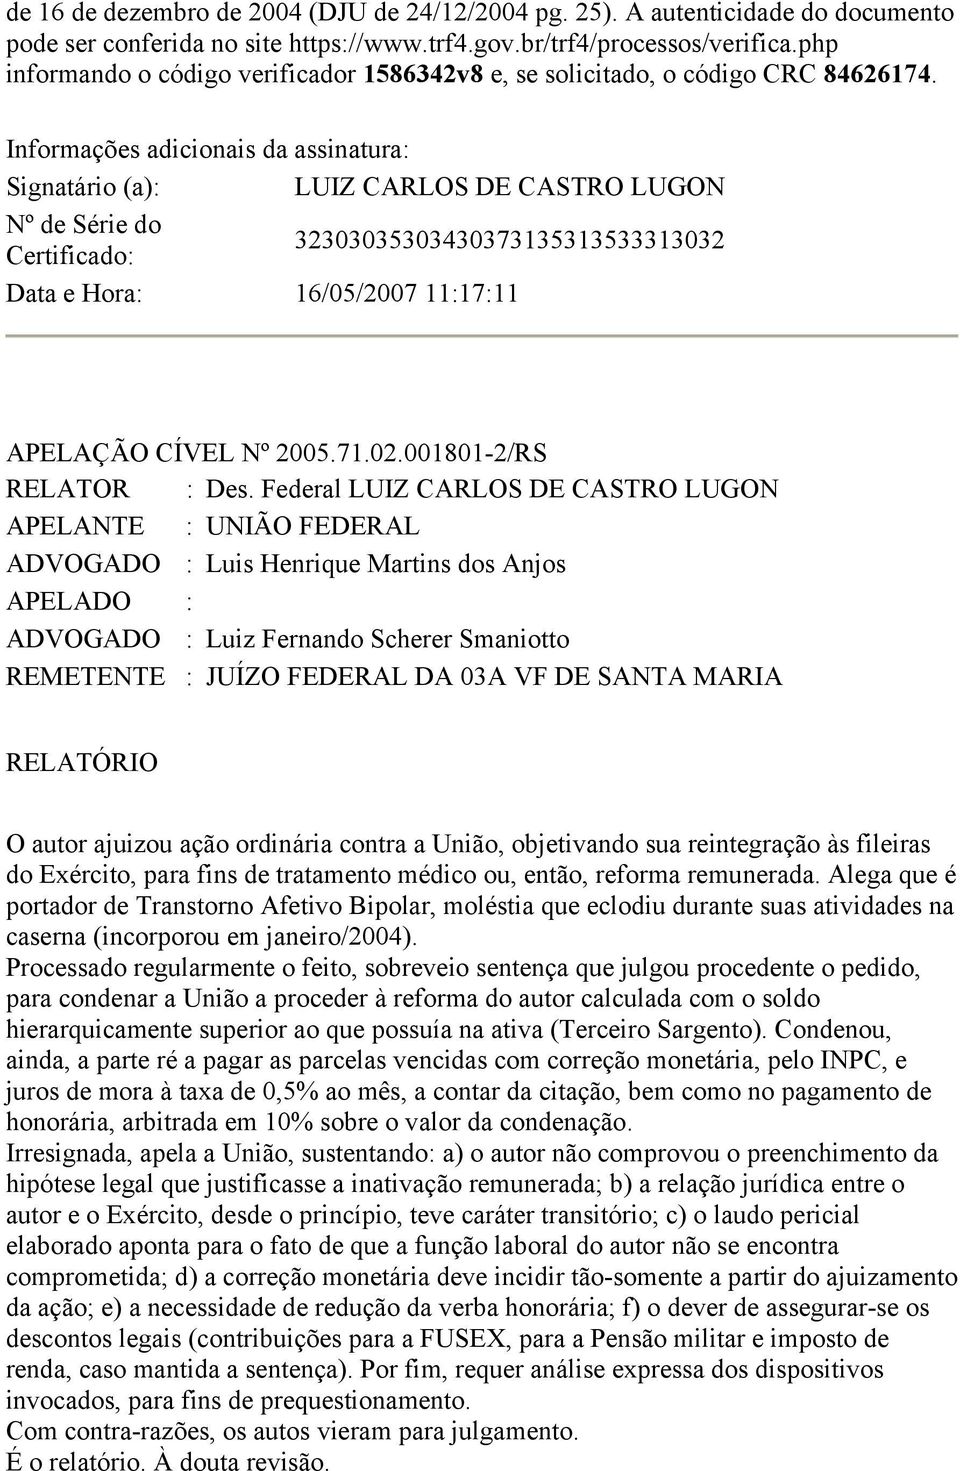 Informações adicionais da assinatura: Signatário (a): LUIZ CARLOS DE CASTRO LUGON Nº de Série do Certificado: 32303035303430373135313533313032 Data e Hora: 16/05/2007 11:17:11 APELAÇÃO CÍVEL Nº 2005.